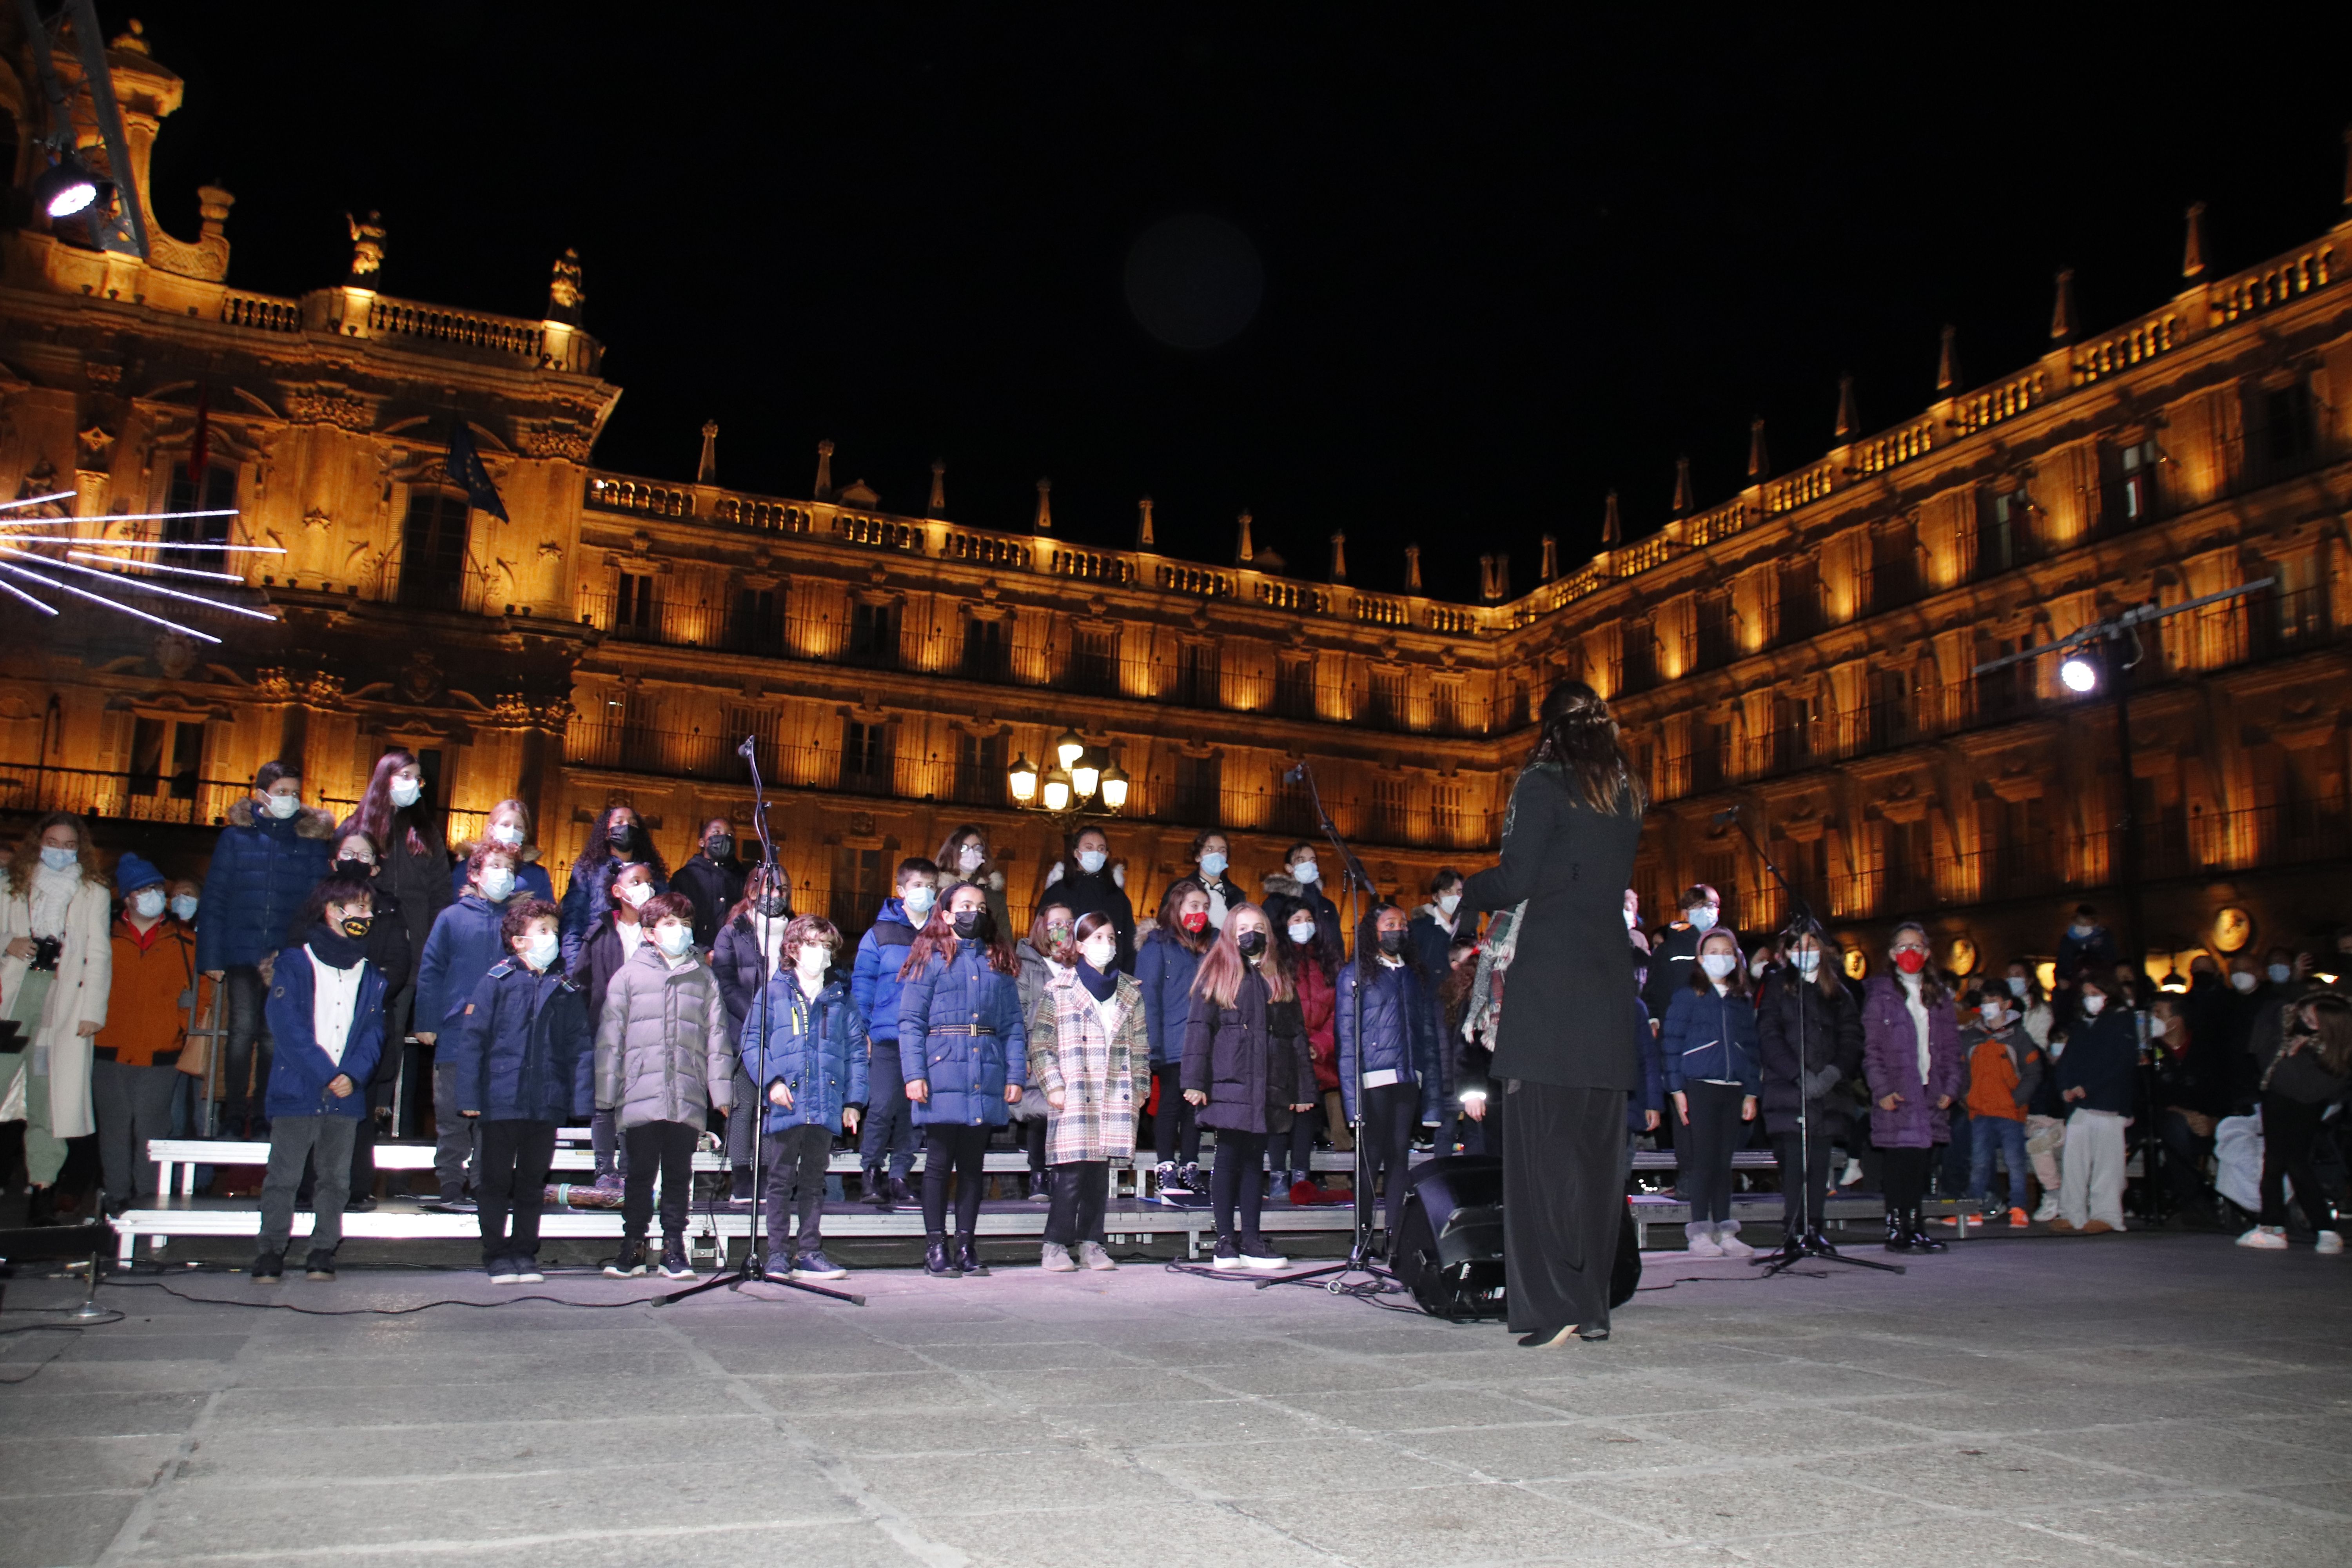 Acto cultural de Navidad en la Plaza Mayor | Fotos Andrea M